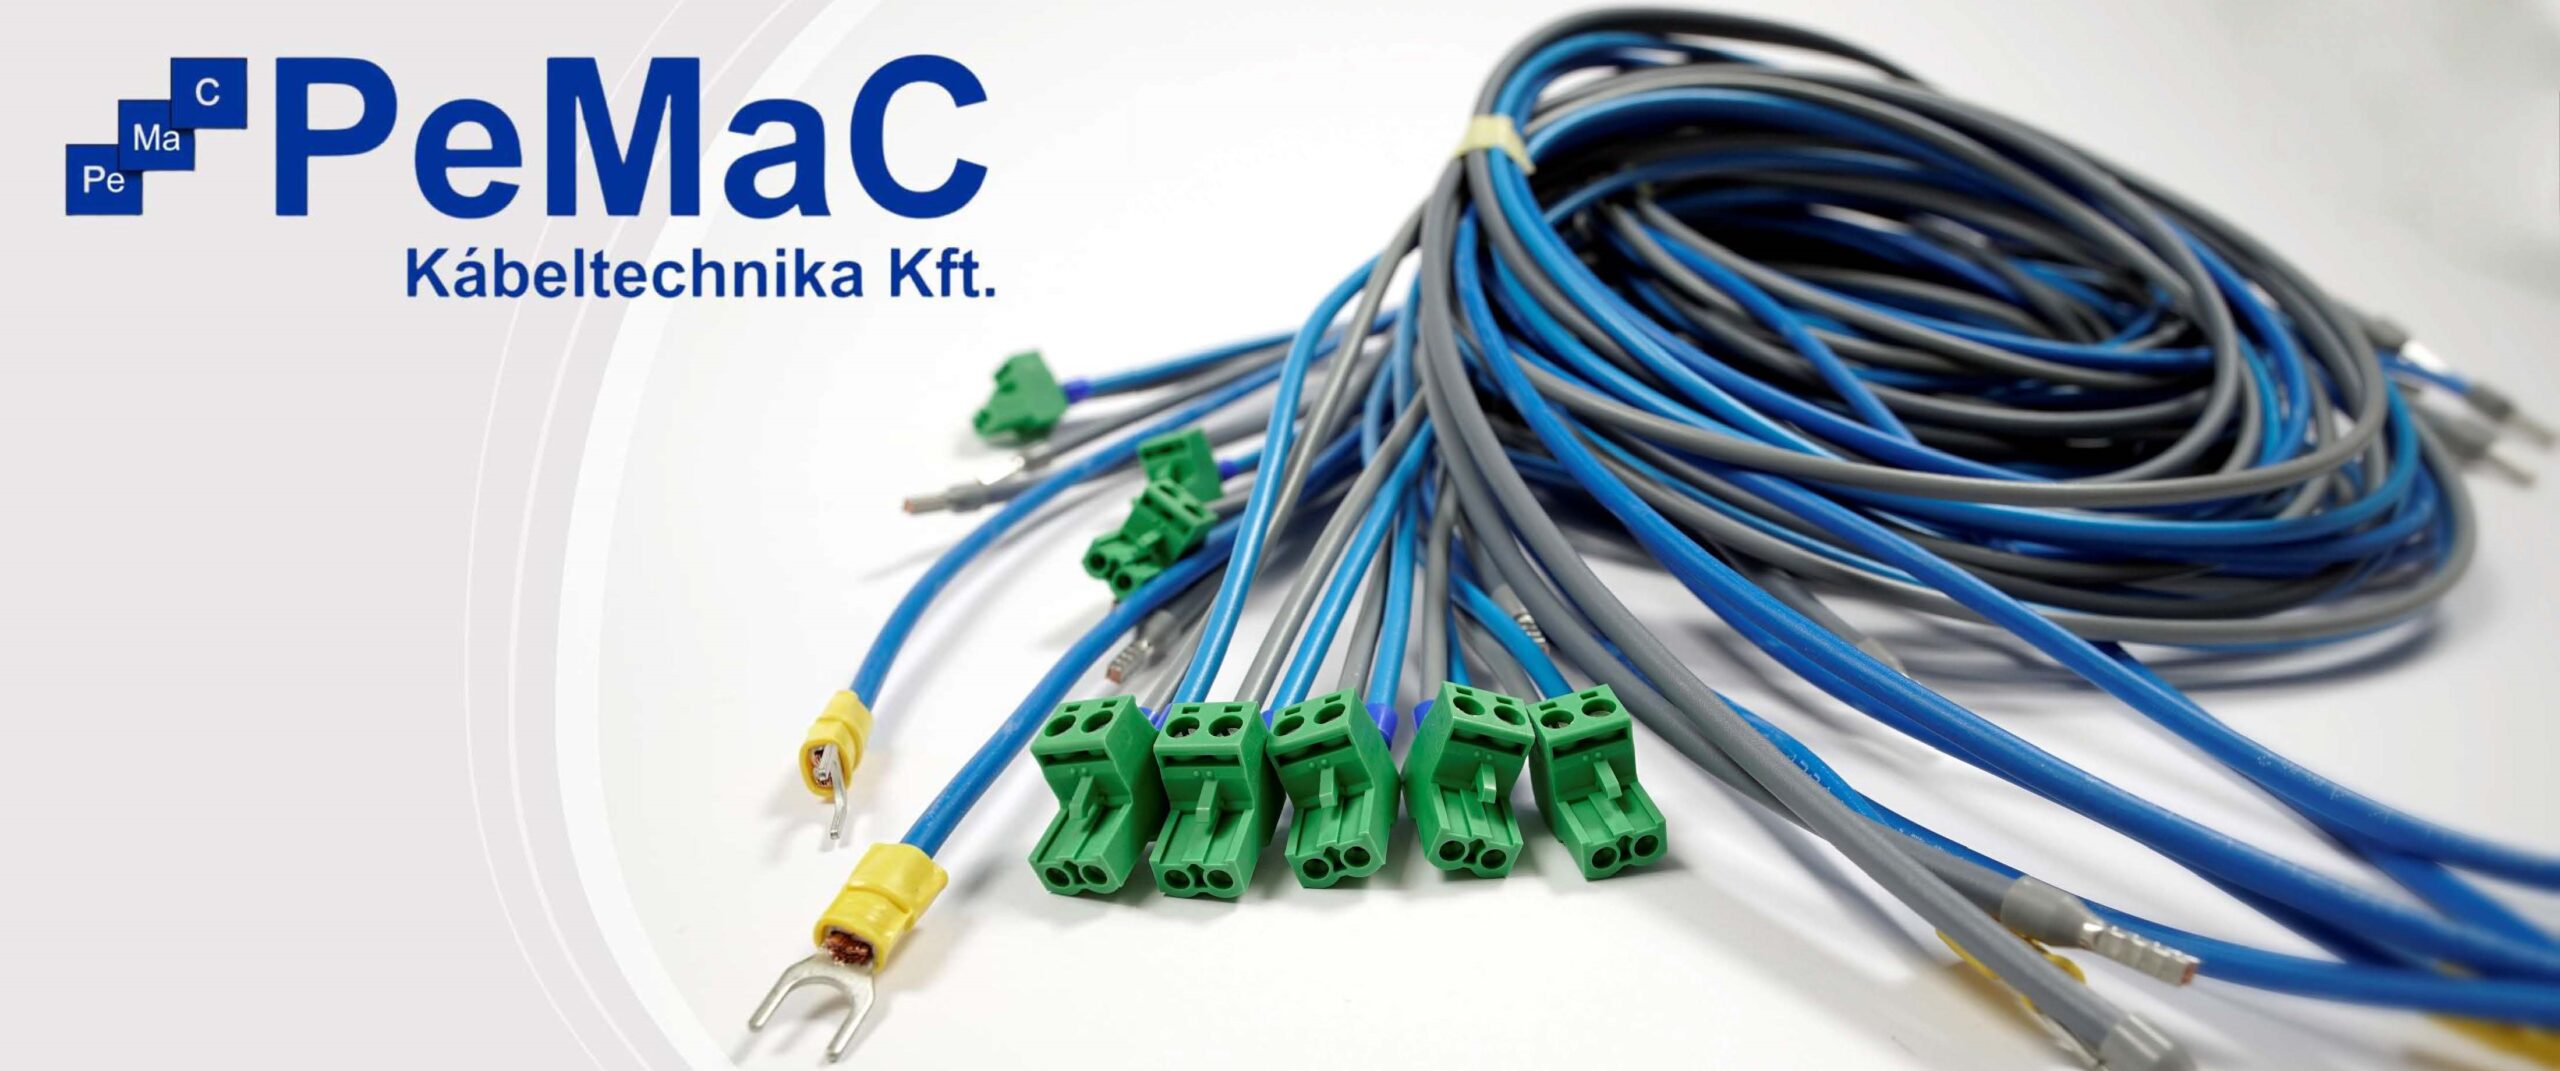 Üzleti partnerkeresés kábelkonfekcionálás, elektronika területen – PEMAC Kft.